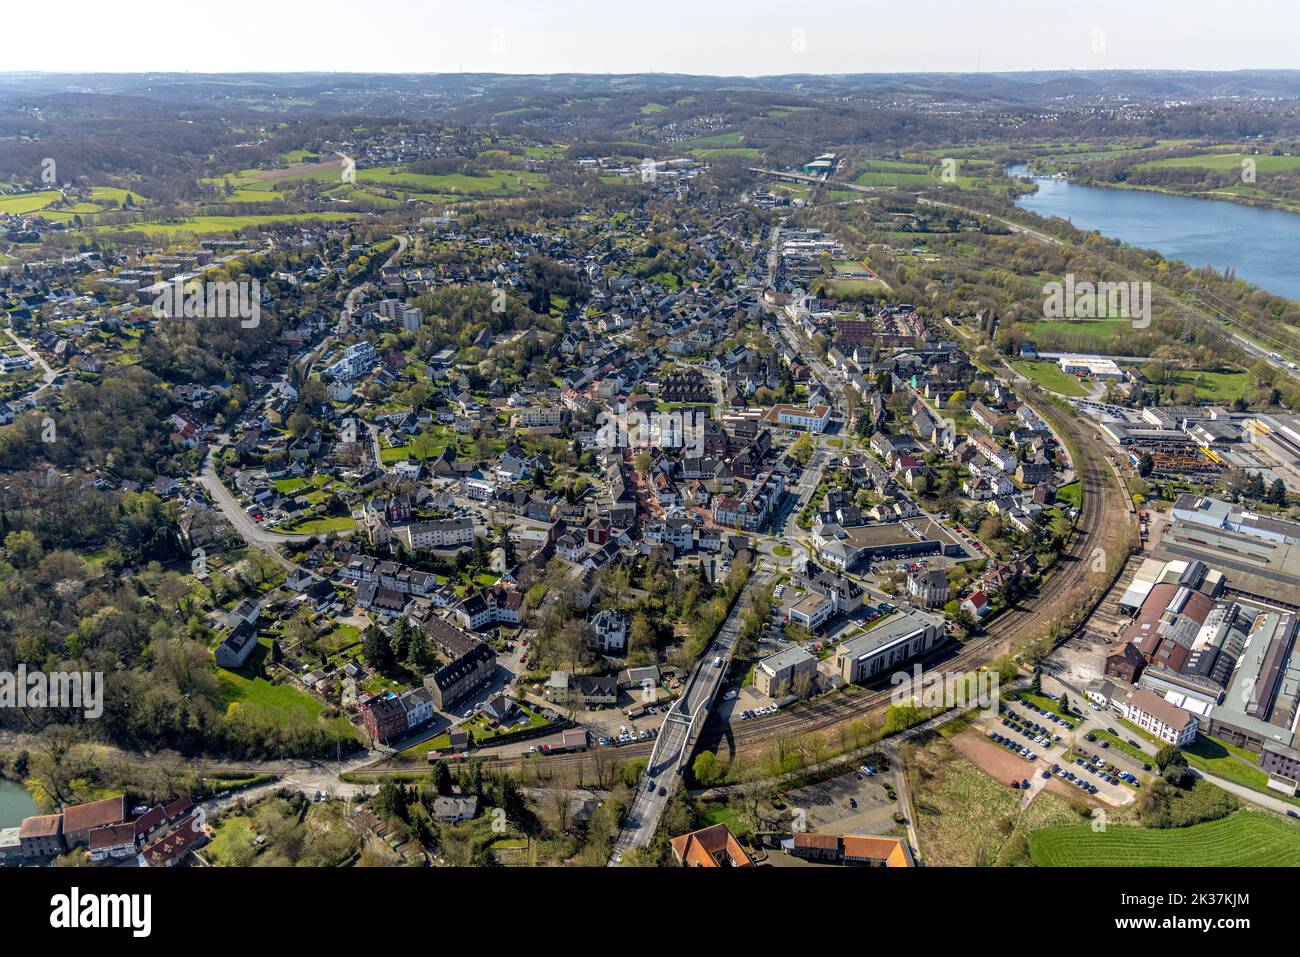 Vue aérienne, vue sur la ville Herbede et Kemnader See, Ostherbede, Witten, région de la Ruhr, Rhénanie-du-Nord-Westphalie, Allemagne, DE, Europe, taxe foncière, Immobilien, Banque D'Images